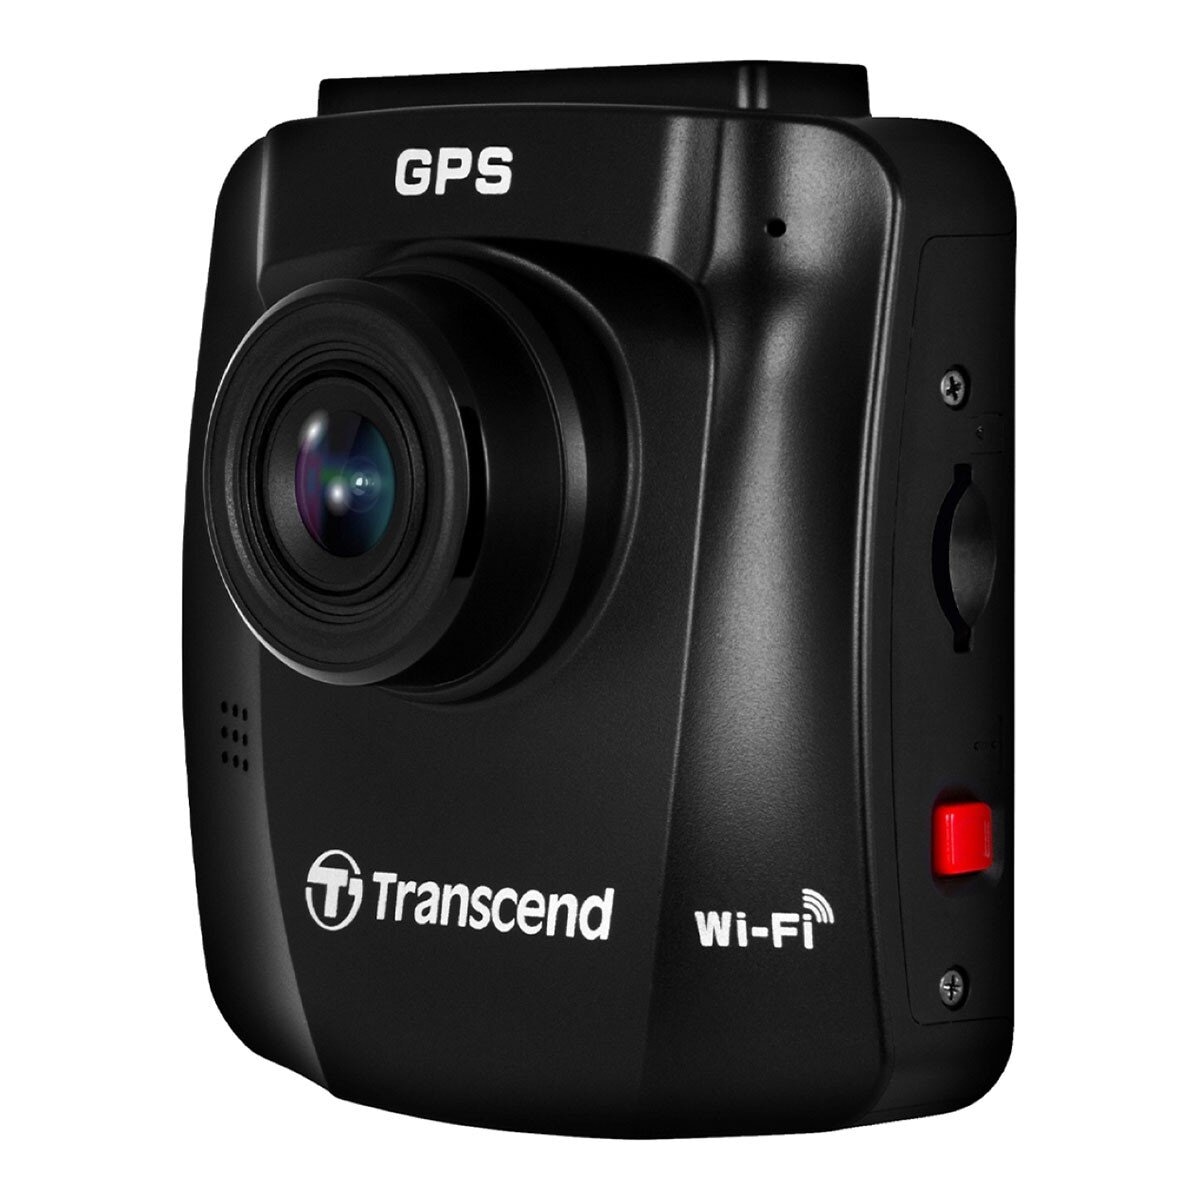 創見 DrivePro 250 行車記錄器內建 Wi-Fi GPS 附 64G 記憶卡